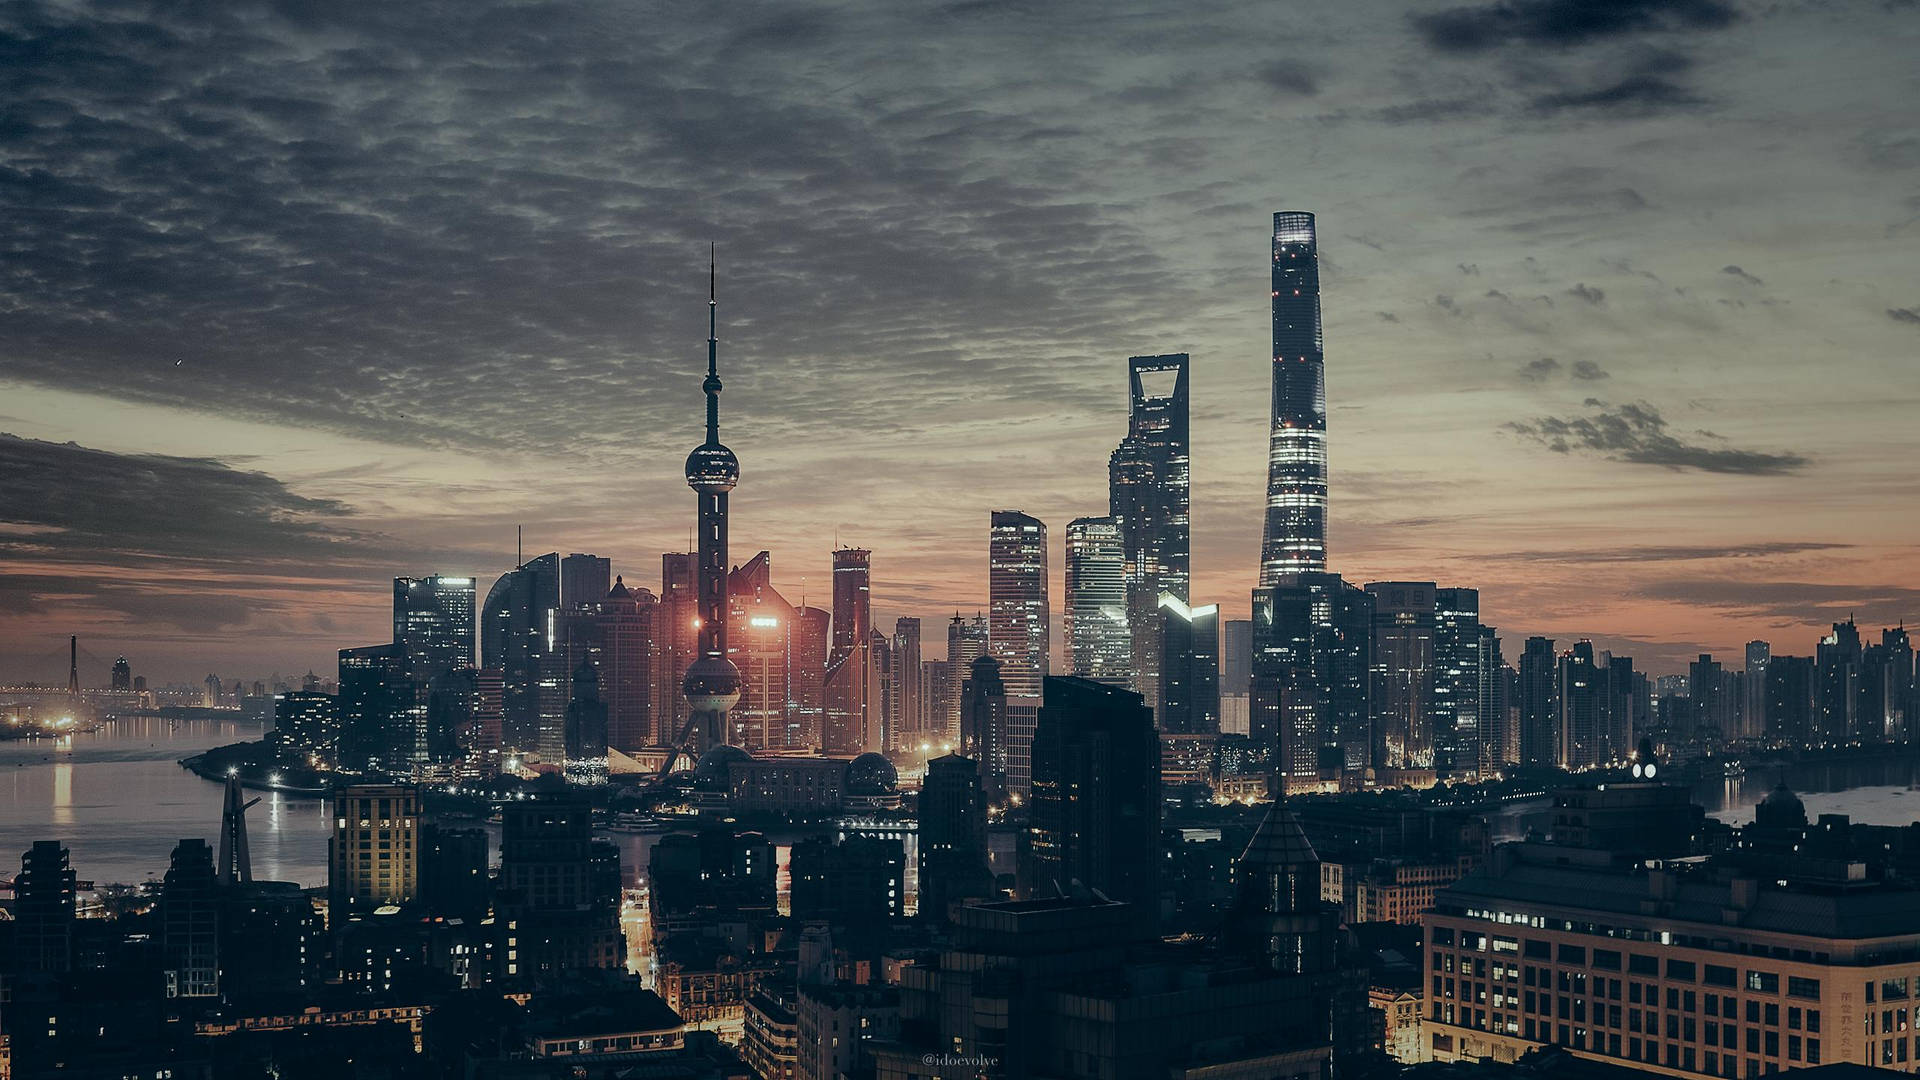 Shanghai City Blade Runner Theme Background